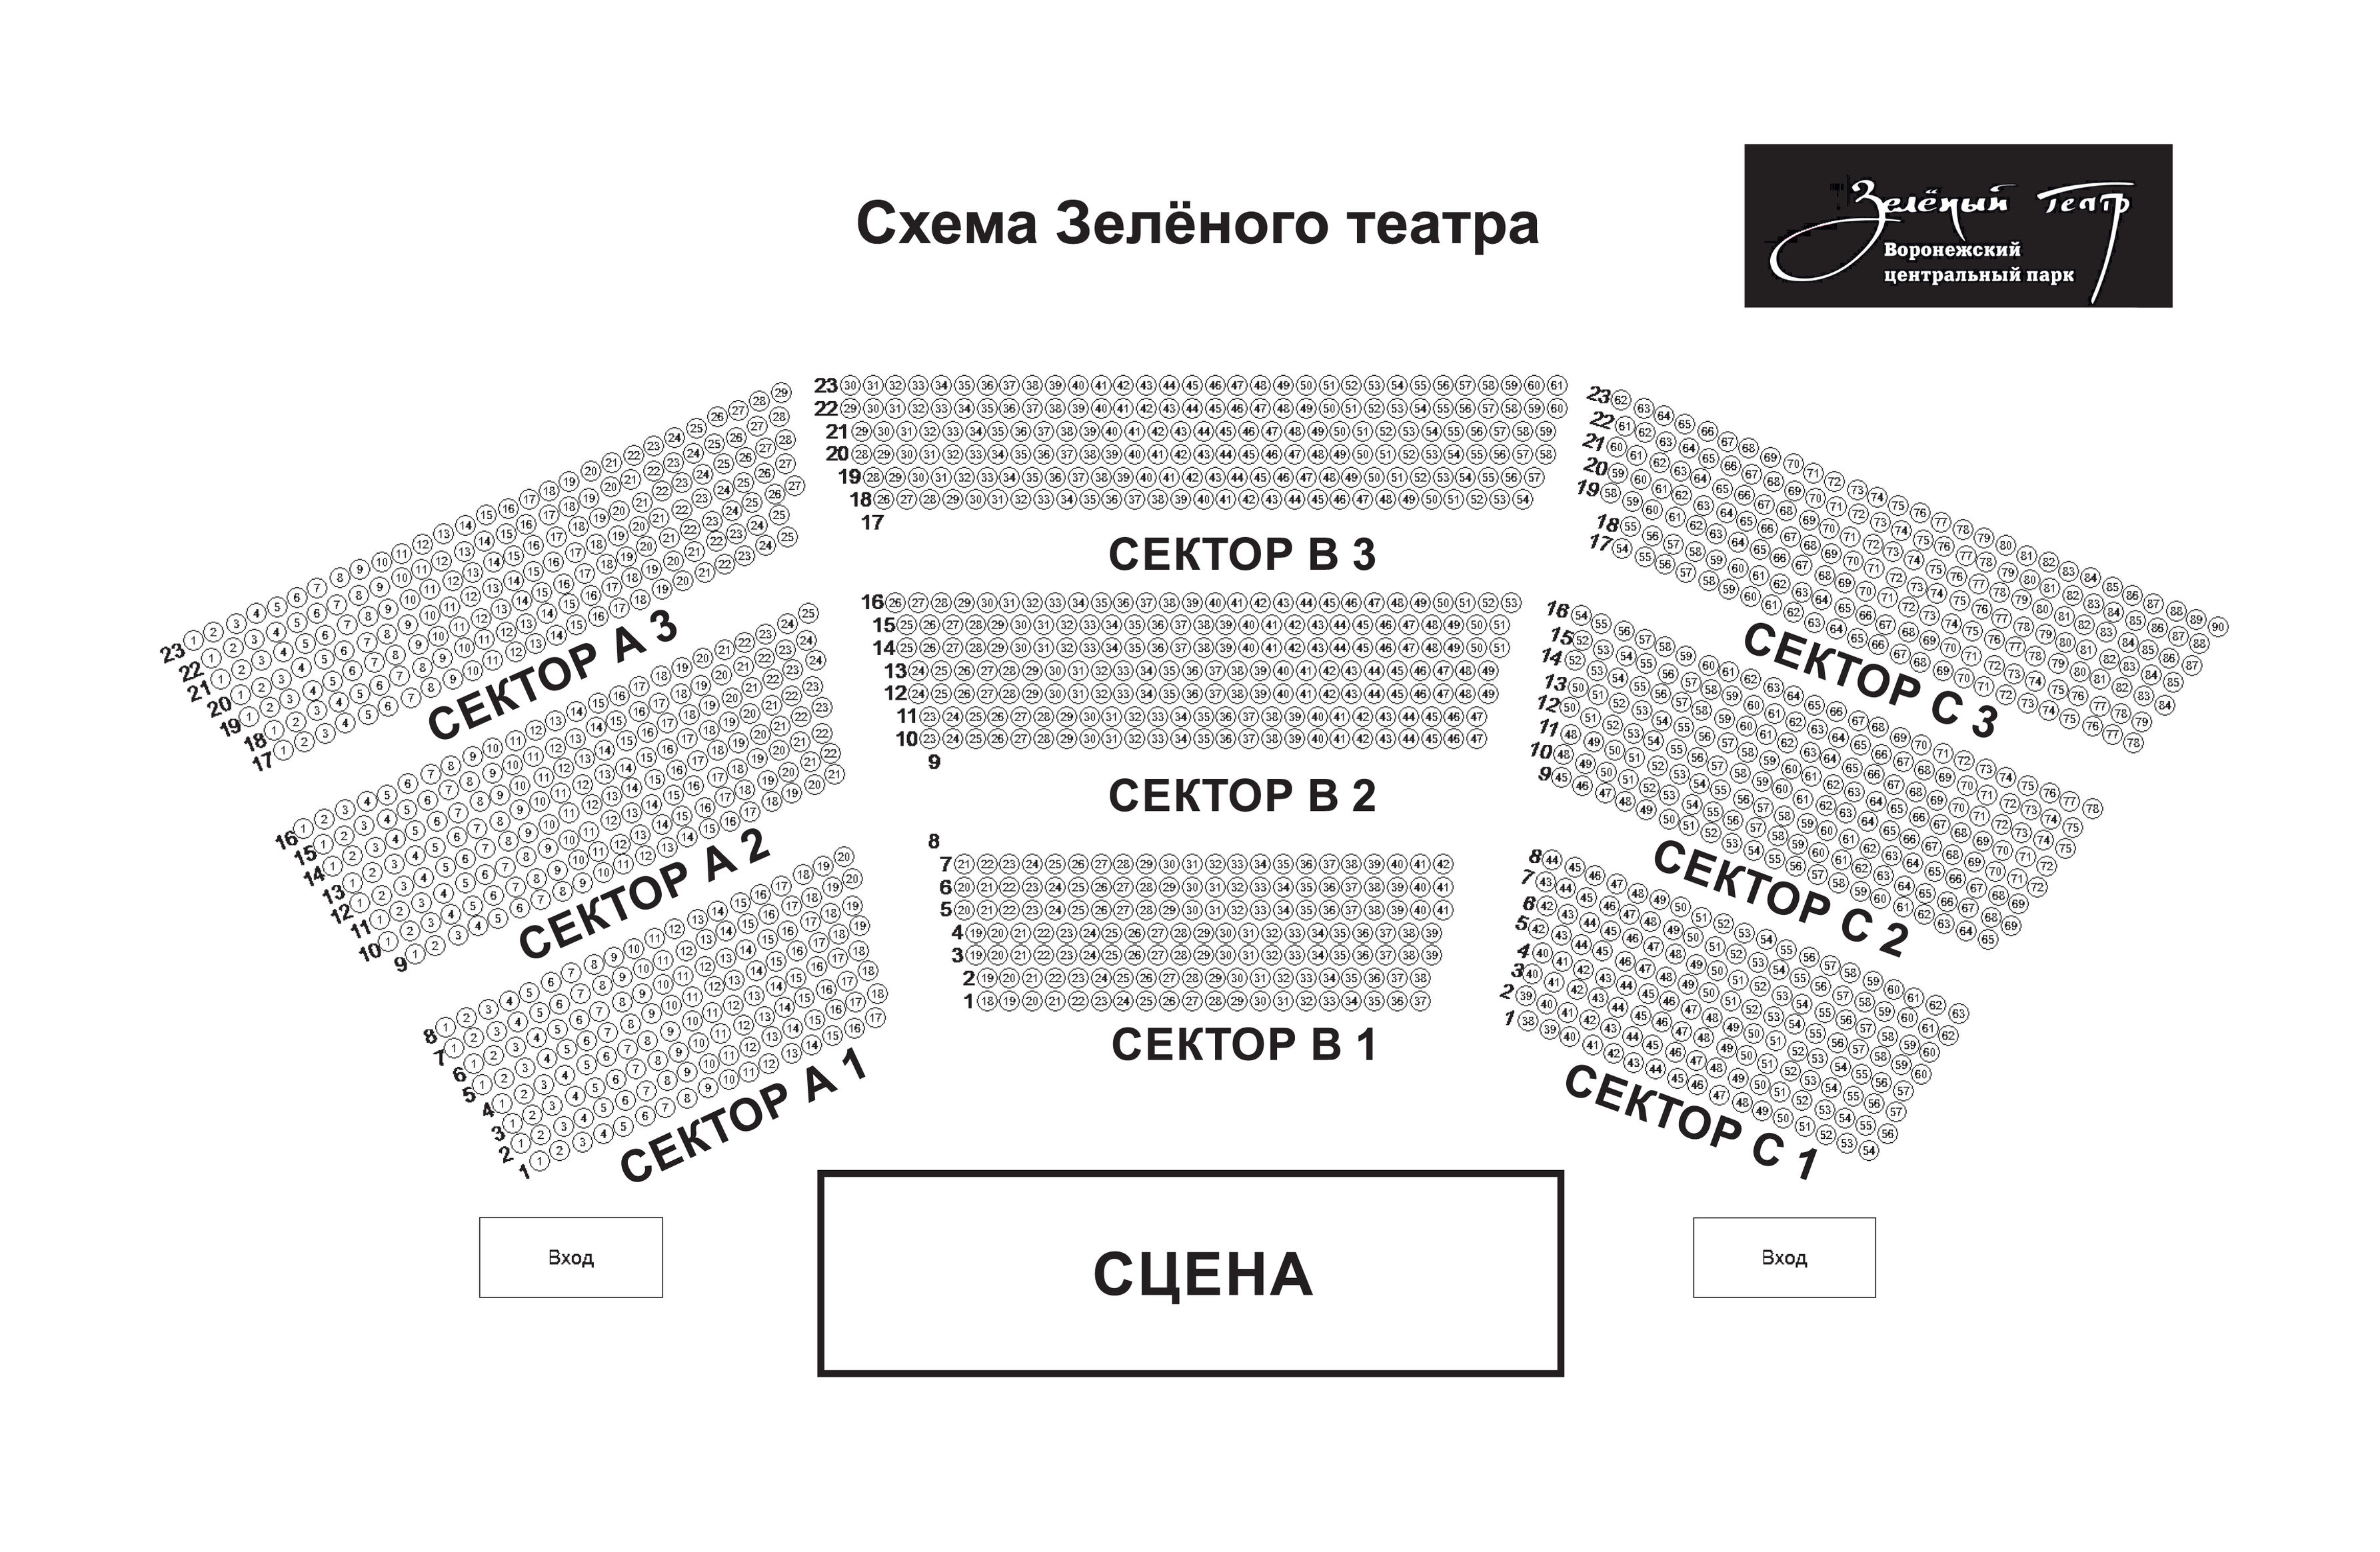 Схема зала для Сурганова и Оркестр